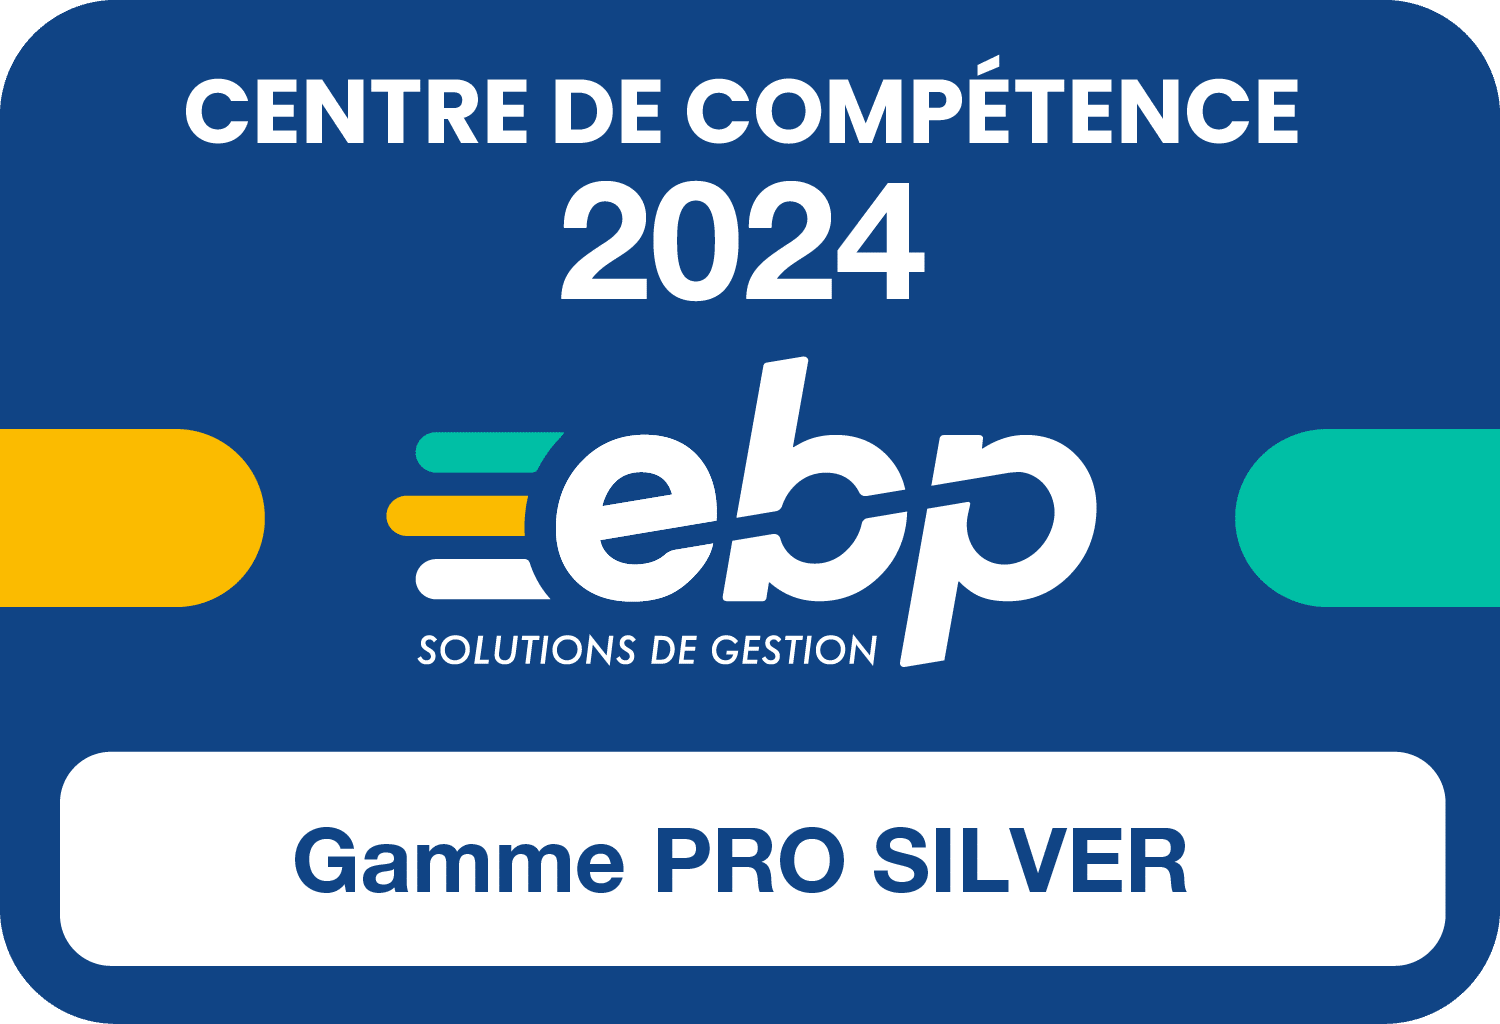 Vignette-Centre-de-Competence-Gamme-PRO-Silver-2024-1500px-RVB